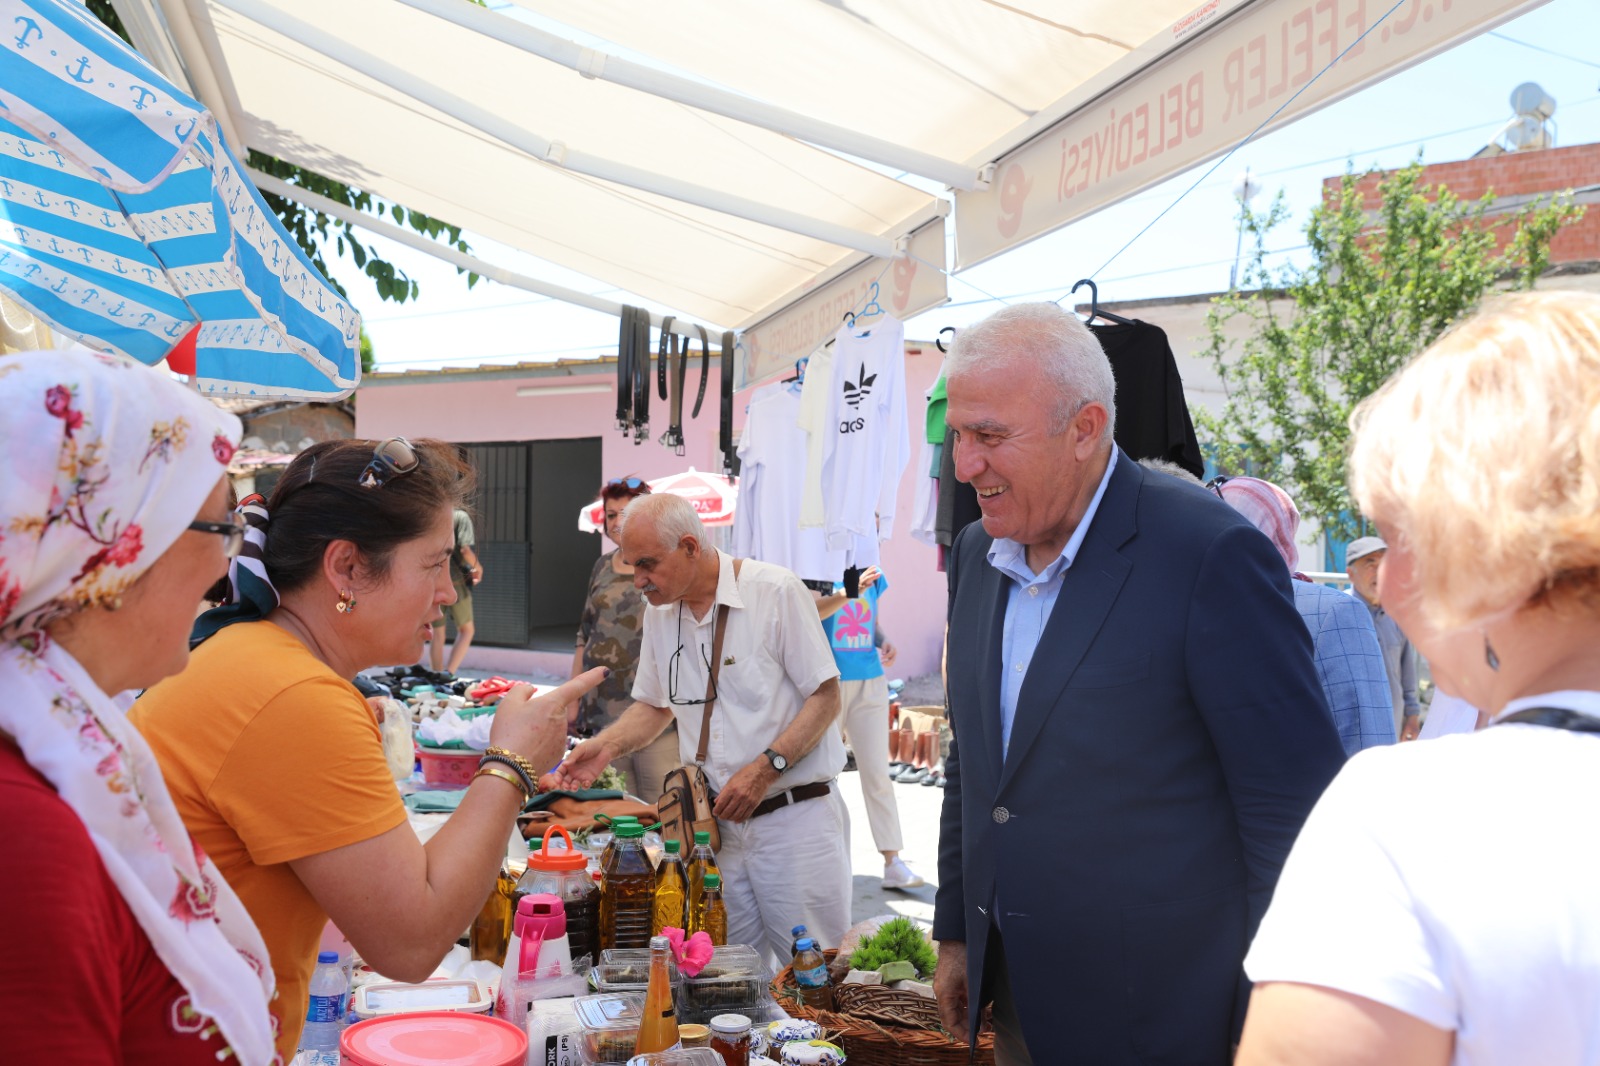 Efeler Belediyesi Kızılcaköy Pazar Yeri’ni açtı